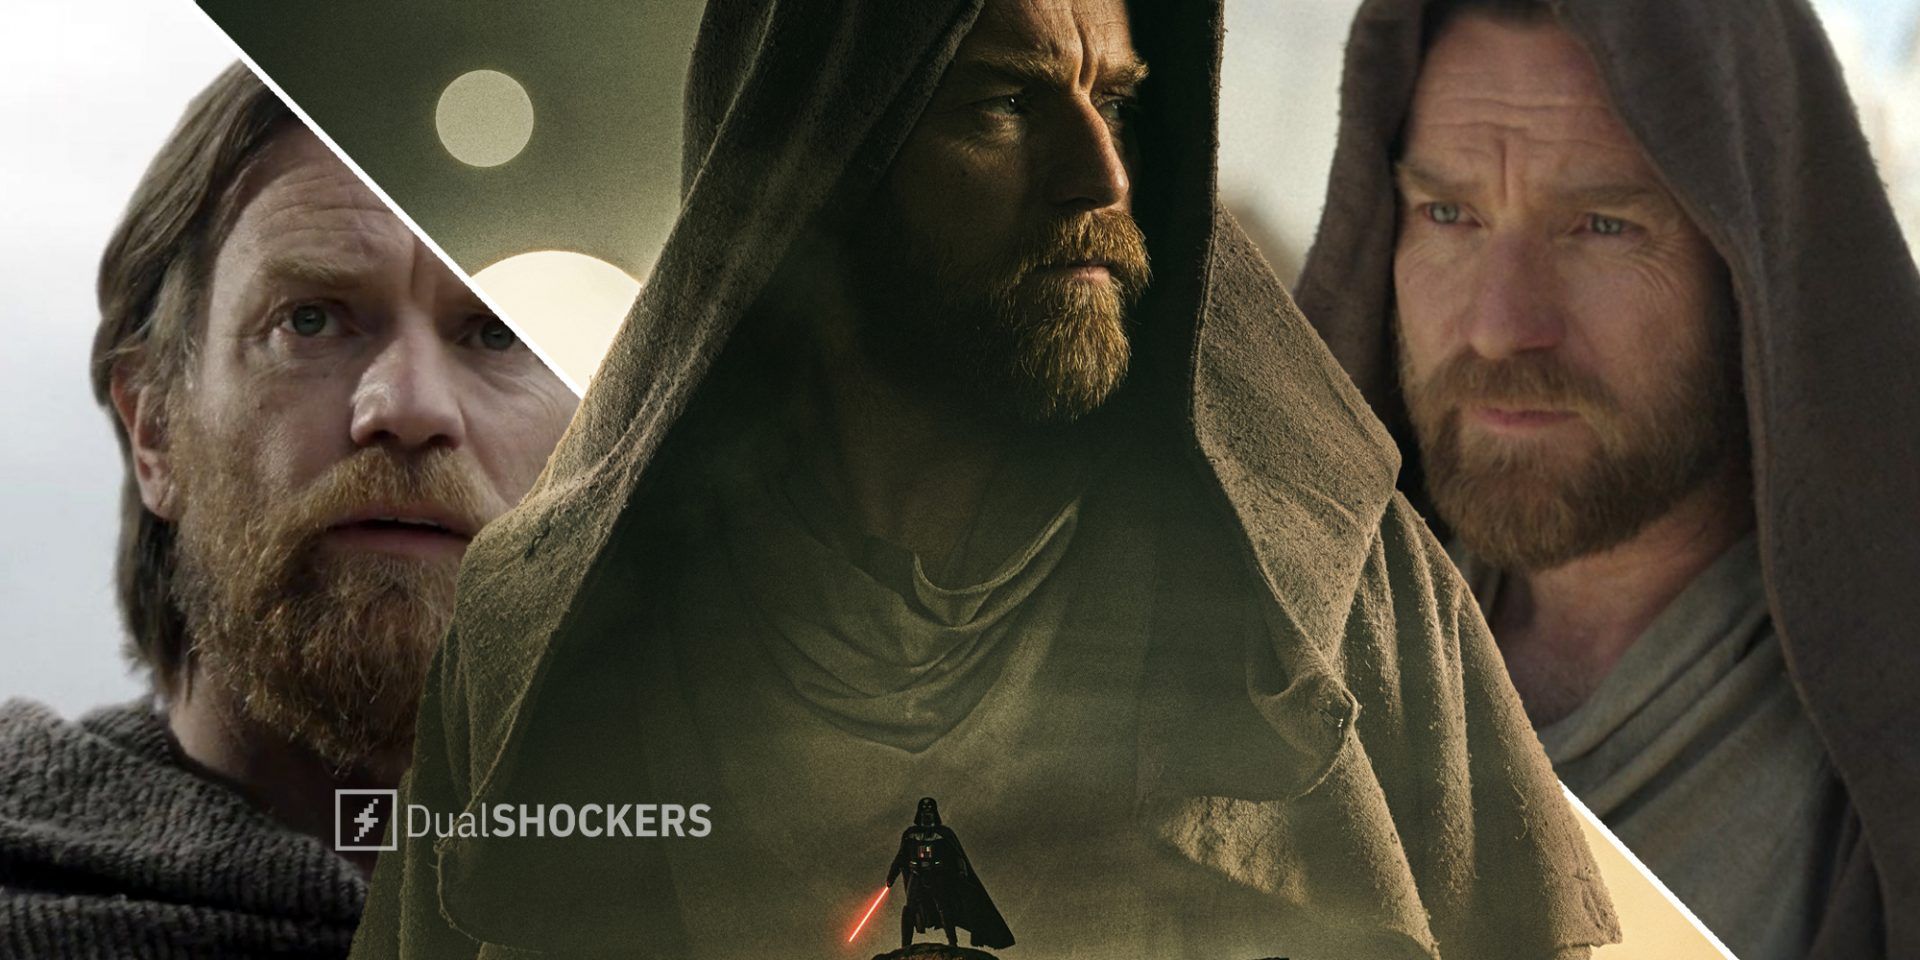 Obi-Wan Kenobi concerned on left, Obi-Wan Kenobi promo photo with Darth Vader in middle, Obi-Wan Kenobi with jedi robe on right